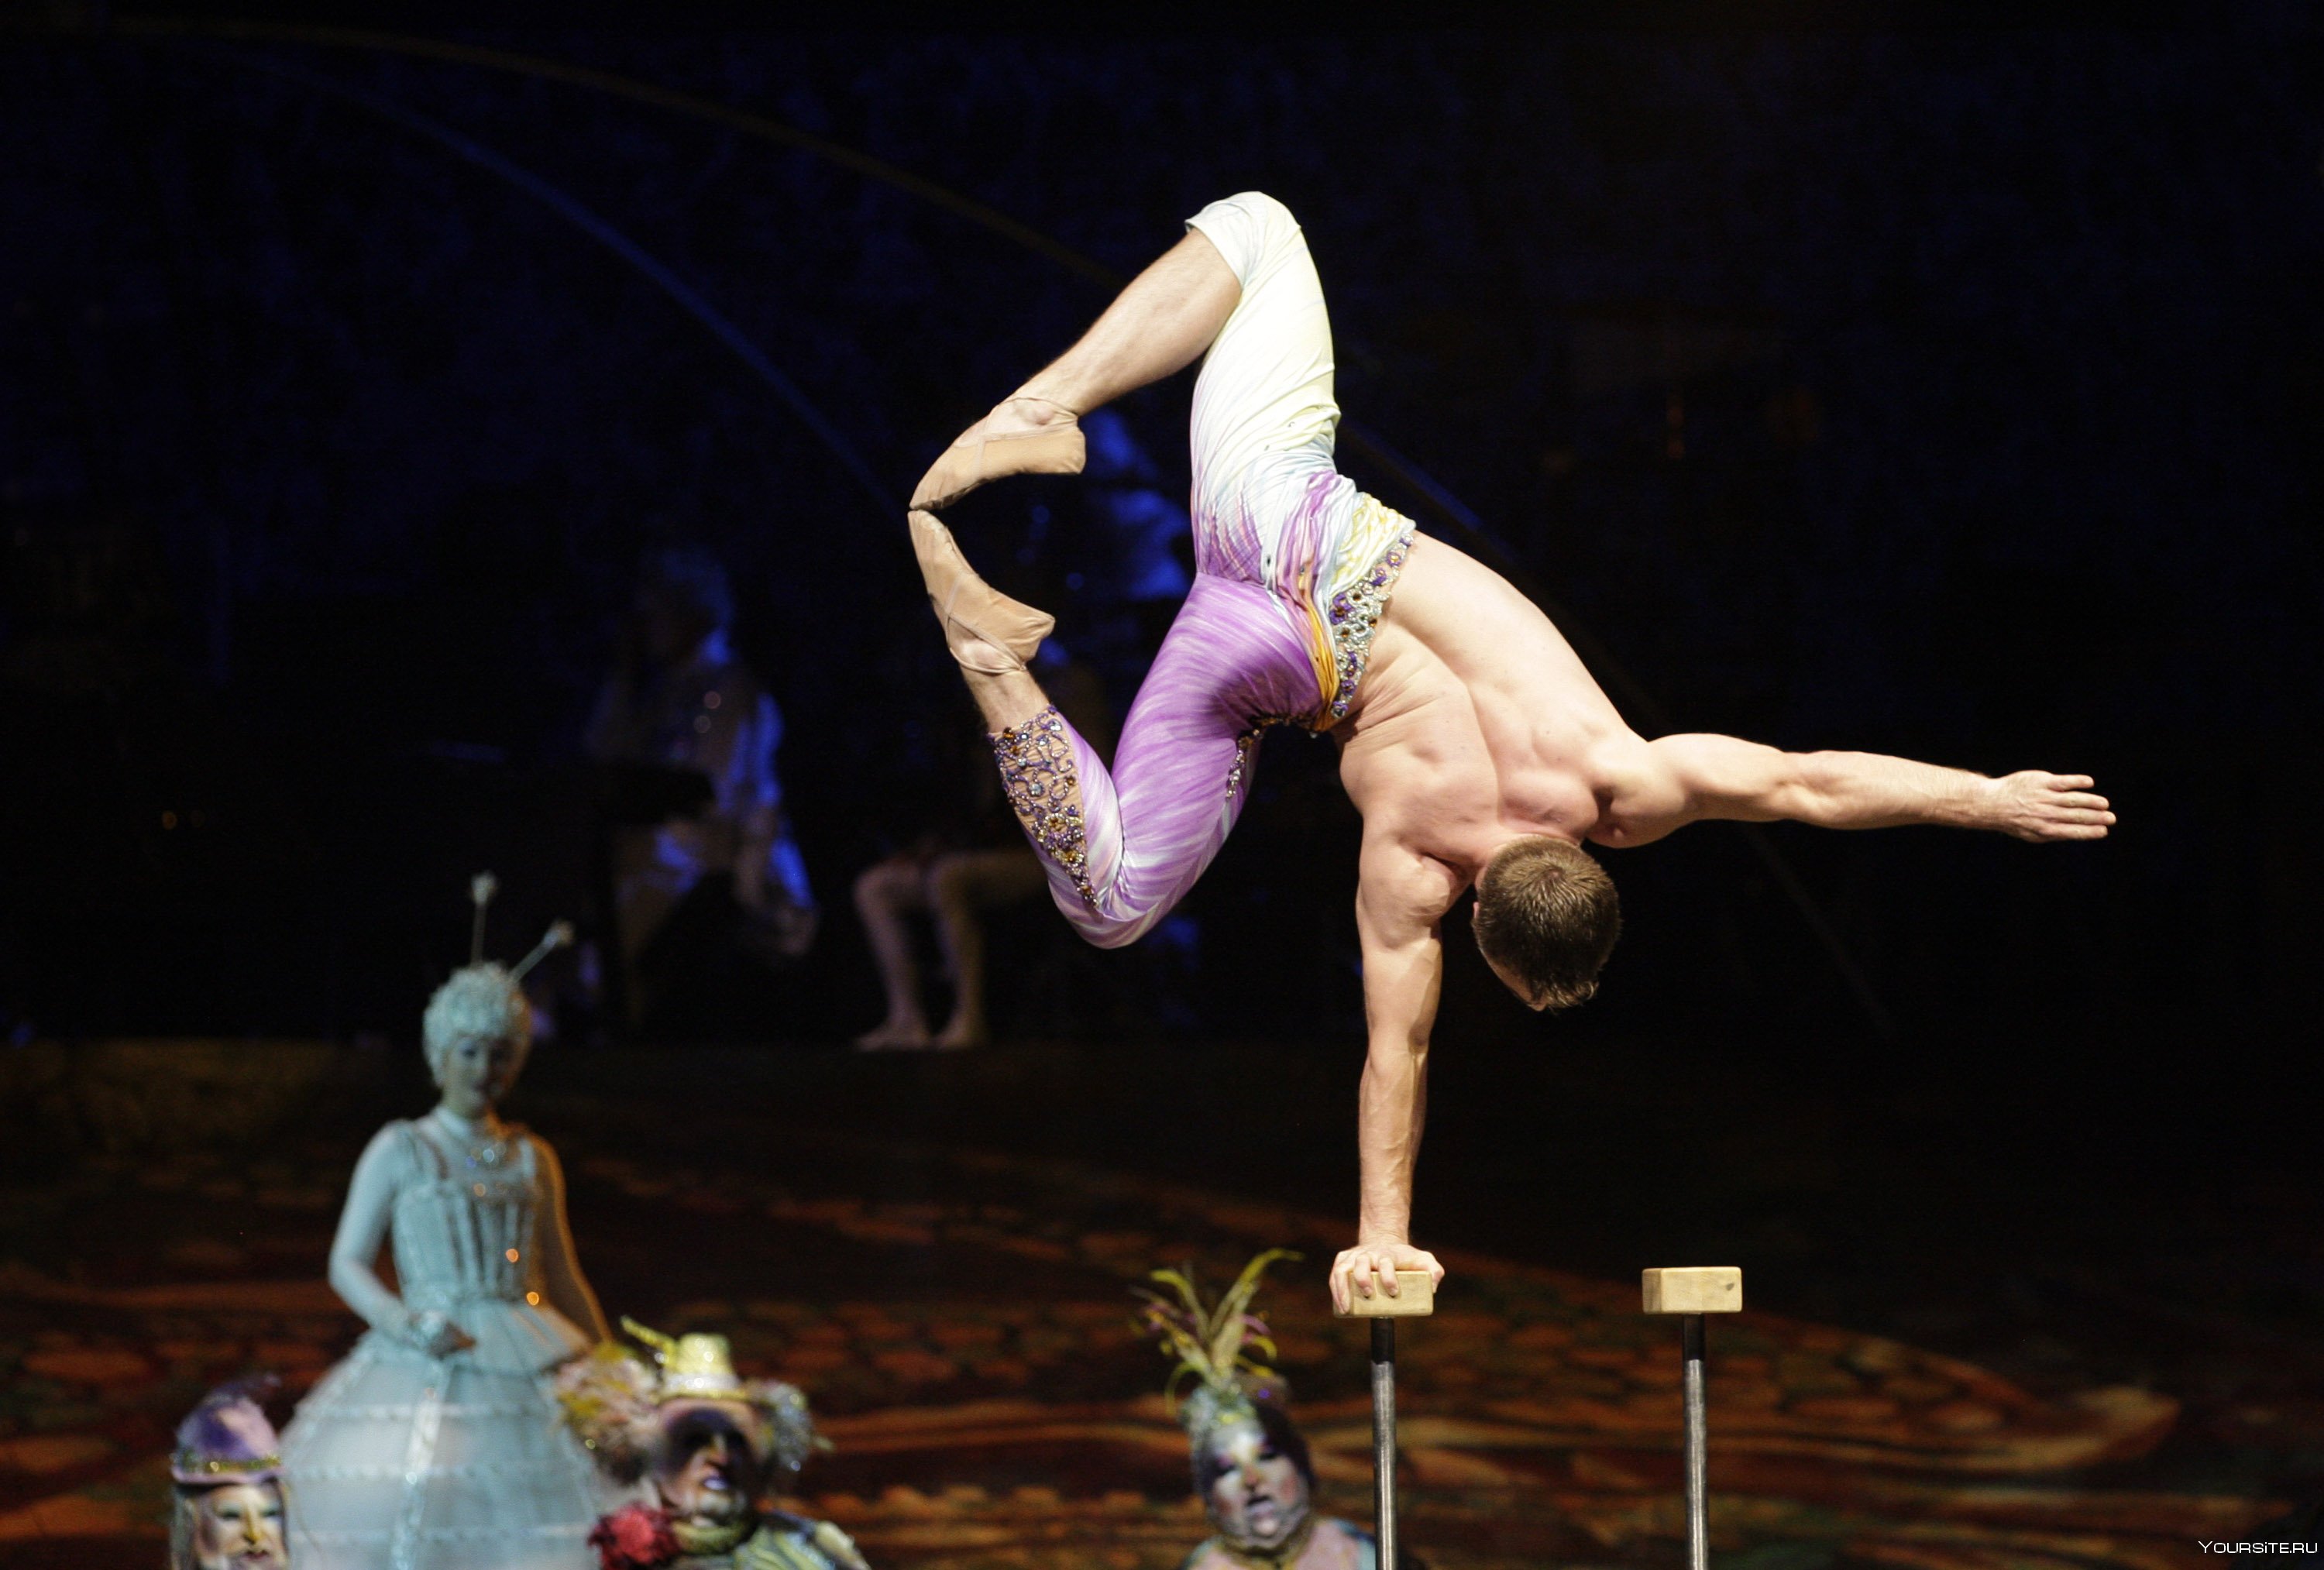 Смотреть онлайн Артистка цирка Светлана встает на мостик и сосет хуй мужа бесплатно